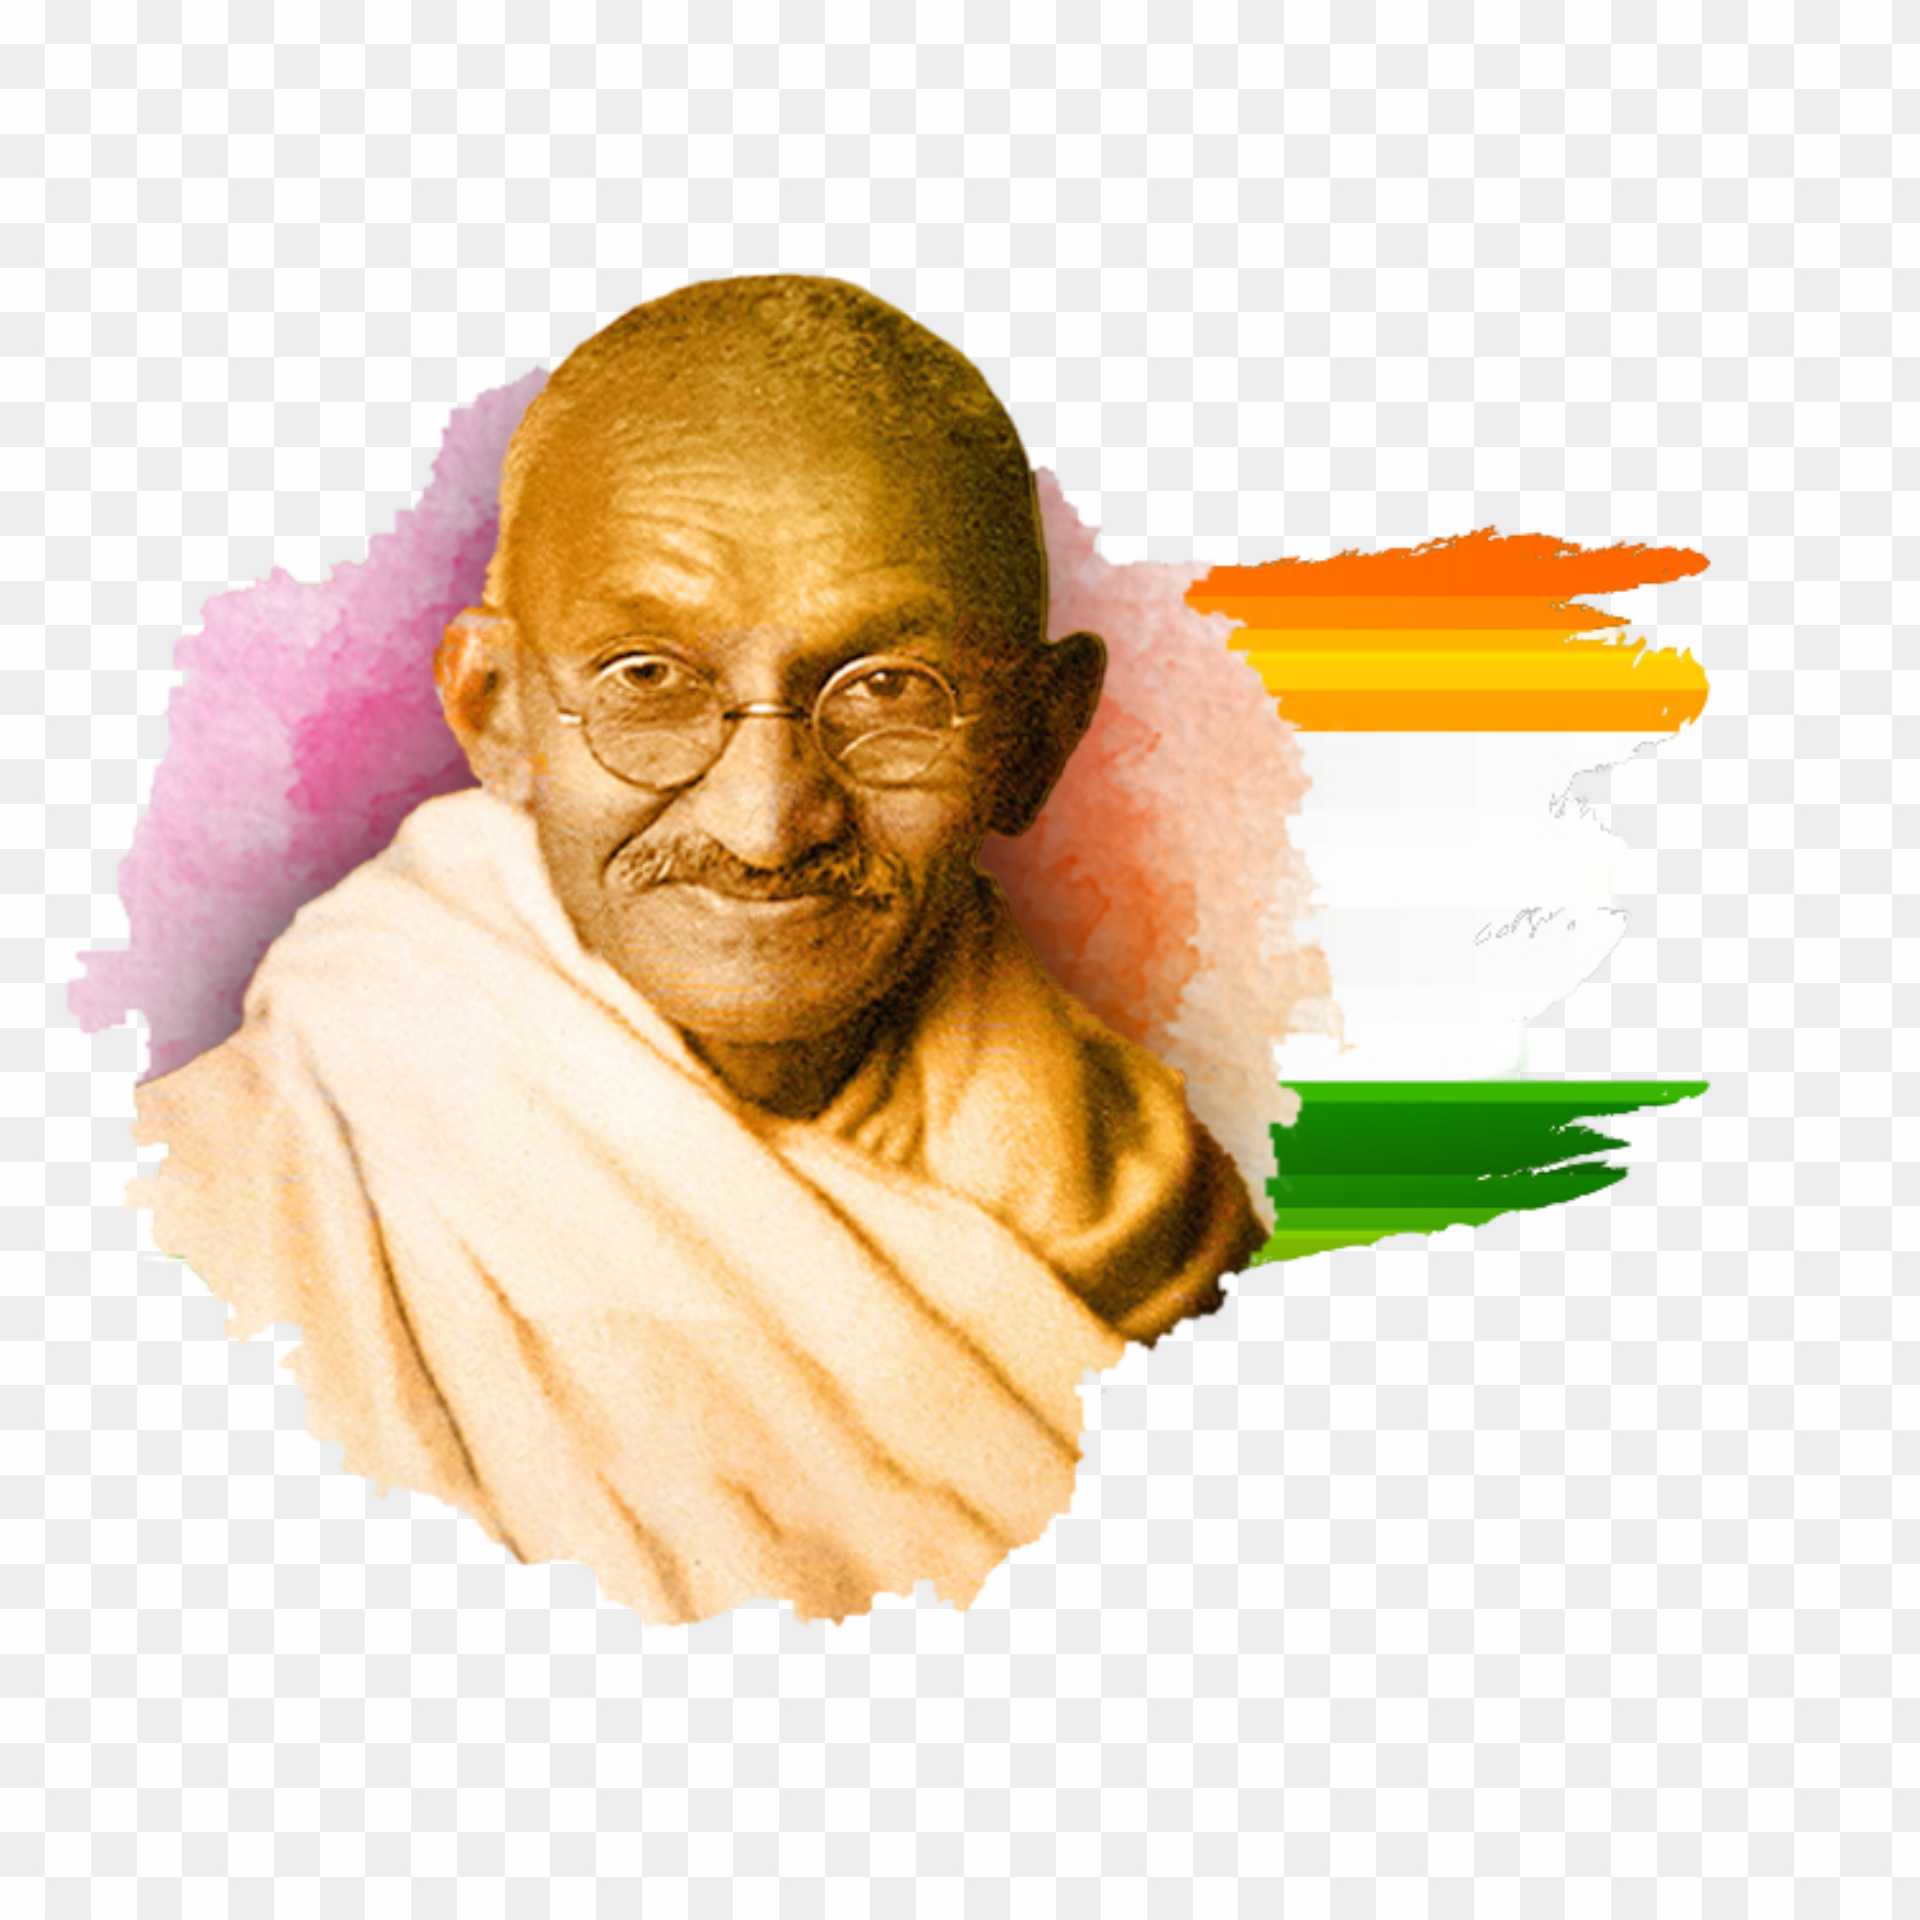 Gandhiji free PNG image download 